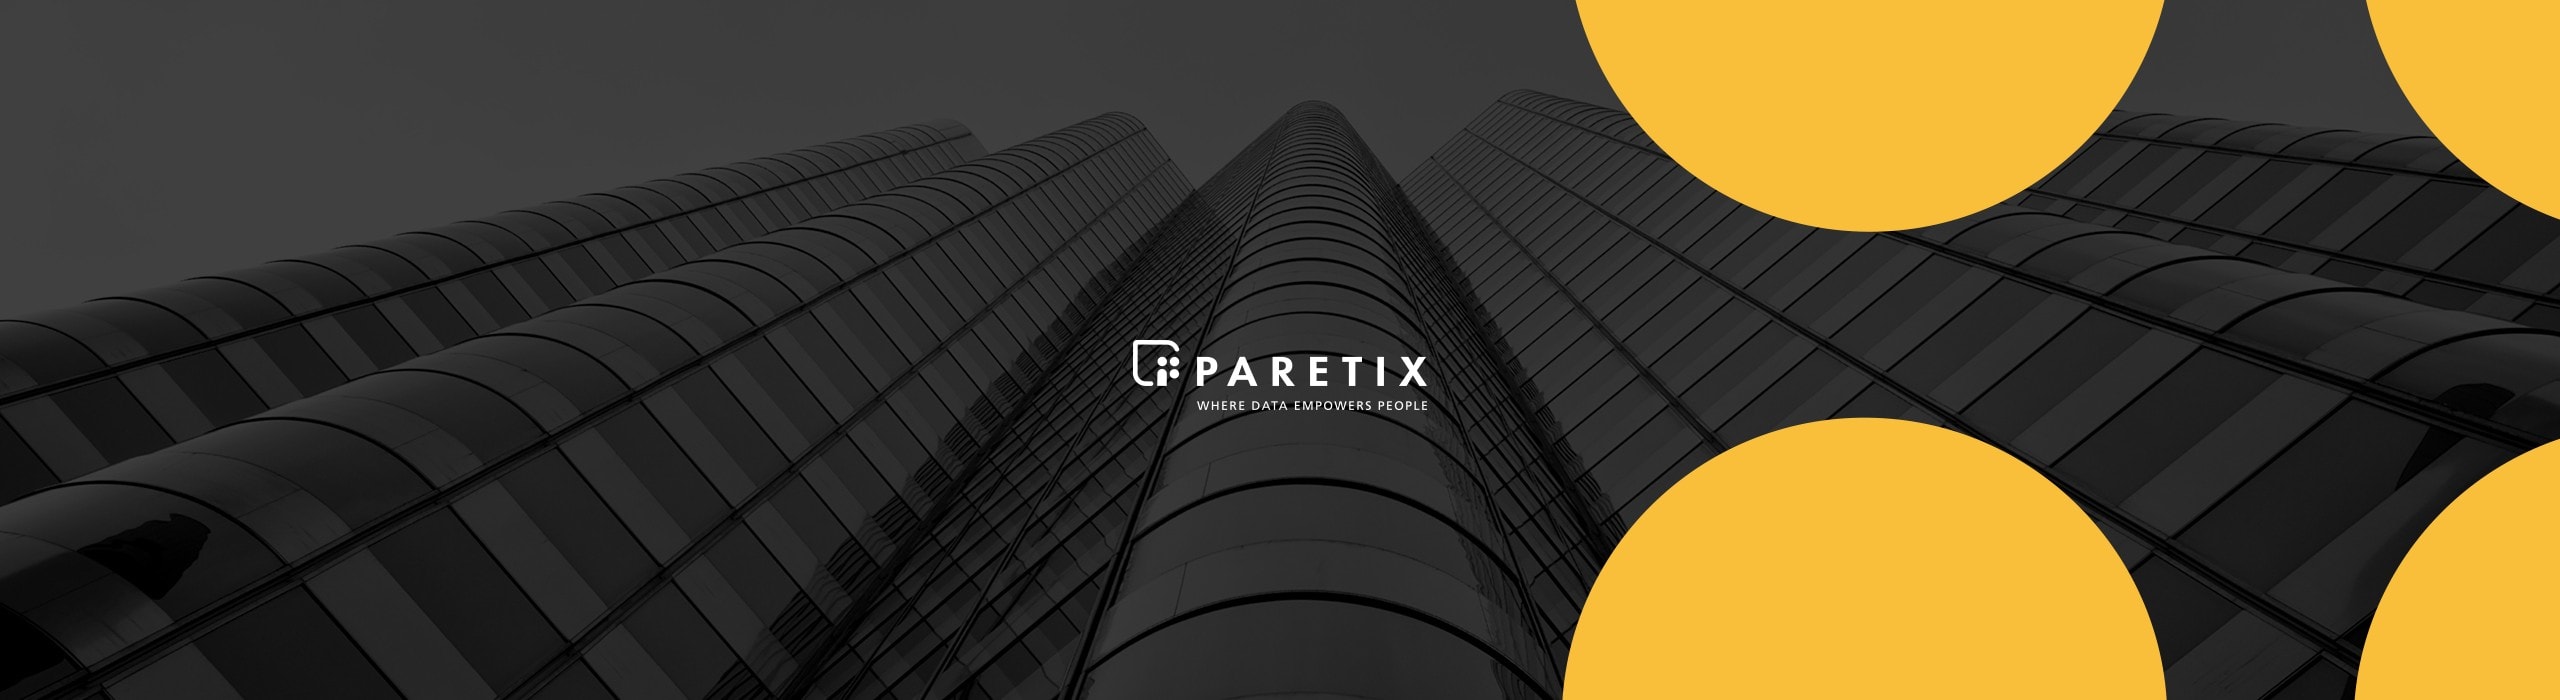 Paretix - natie-paretix-logo - Natie Branding Agency